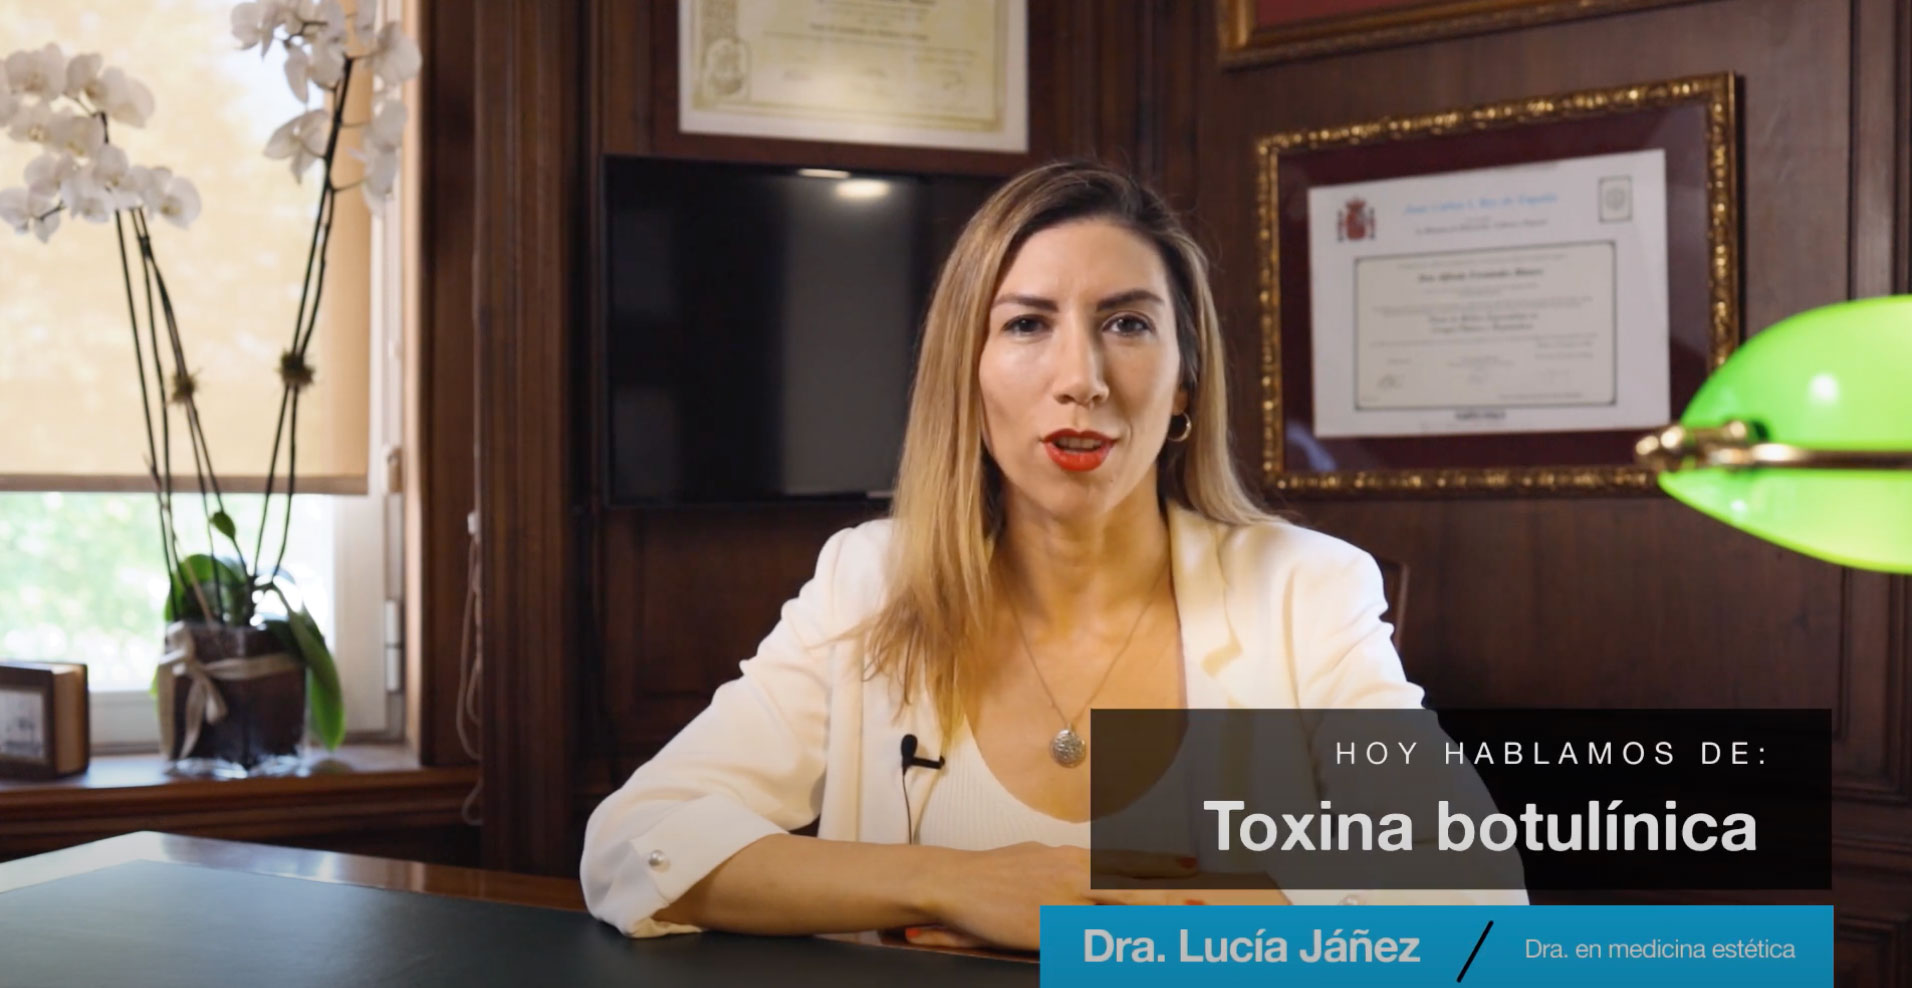 Videoblog acerca de la toxina botulínica en el rostro